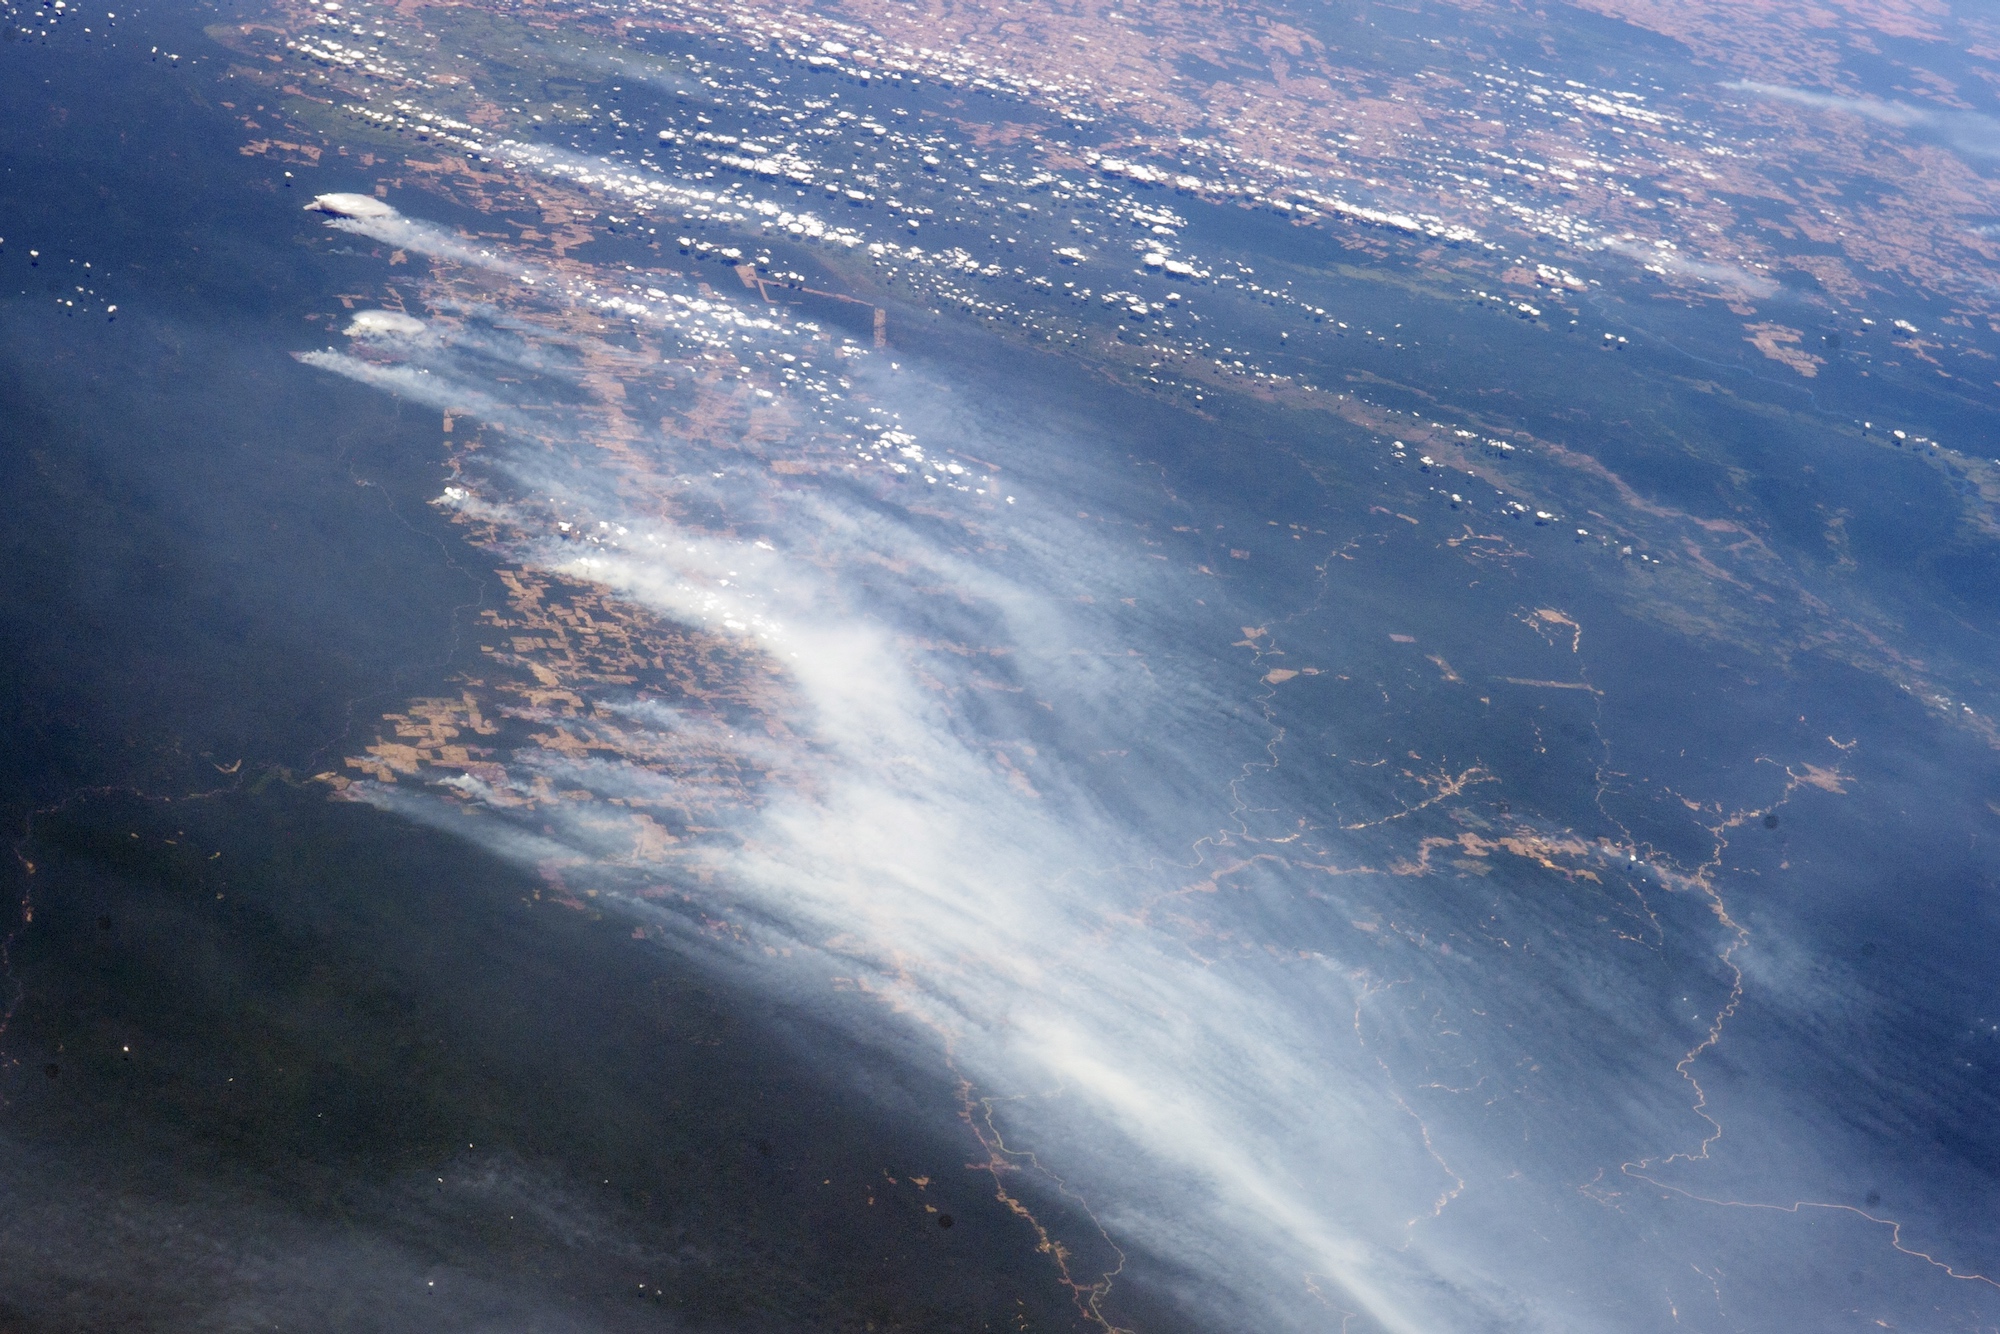 Incendies dans la région du Mato Grosso au Brésil, photographiés le 19 août 2014 depuis la Station spatiale internationale (ISS). © Nasa